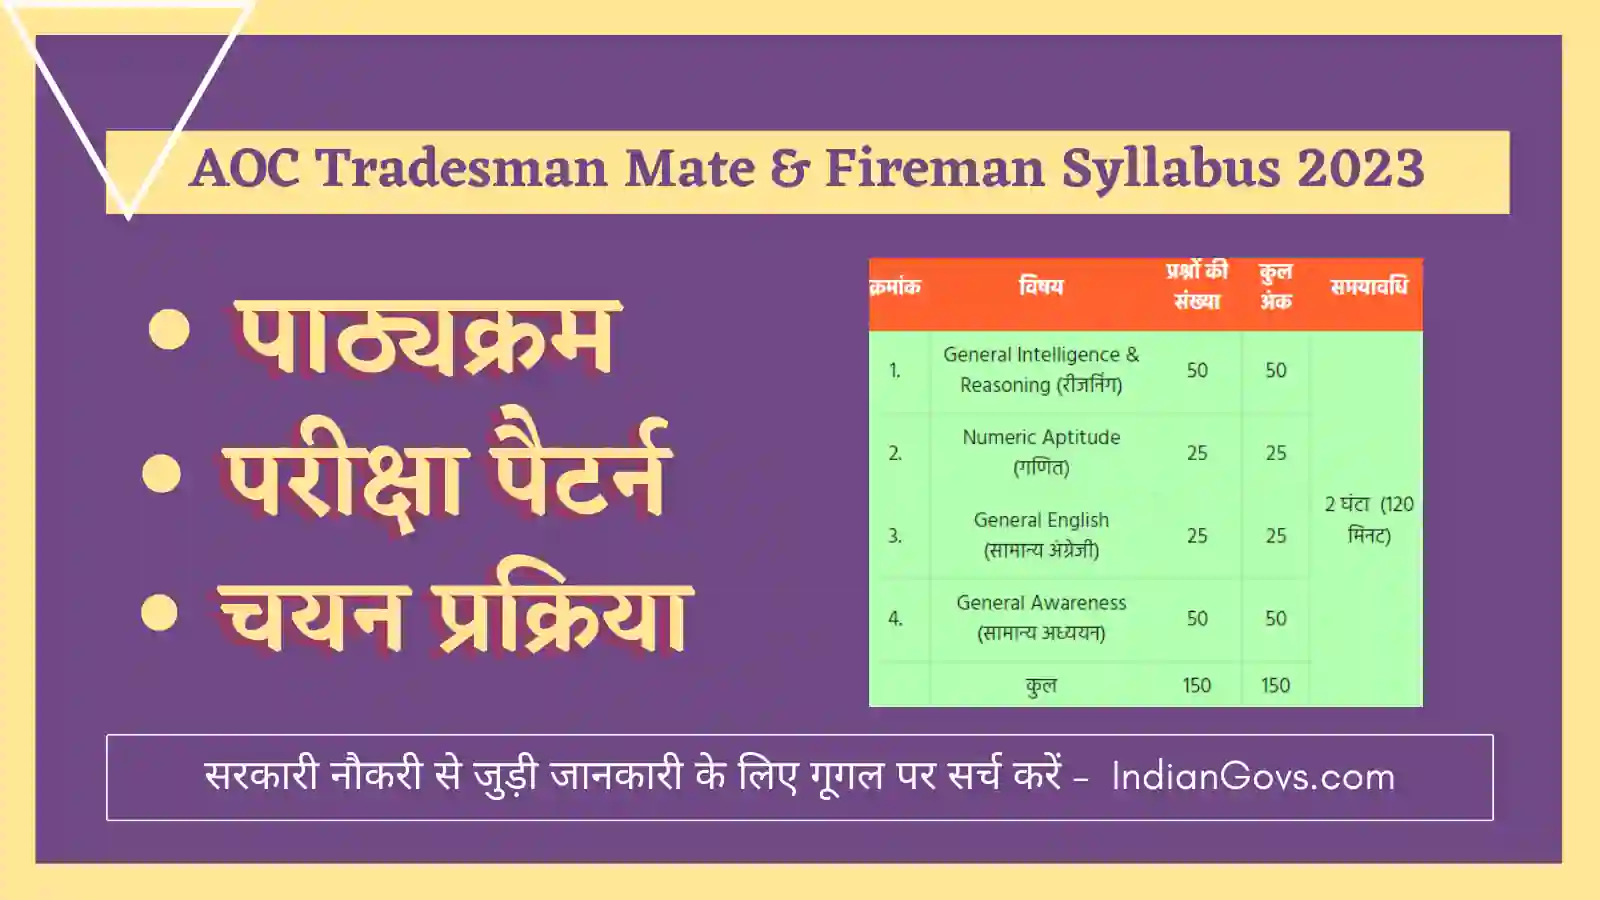 AOC Tradesman & Fireman Syllabus 2023 In Hindi